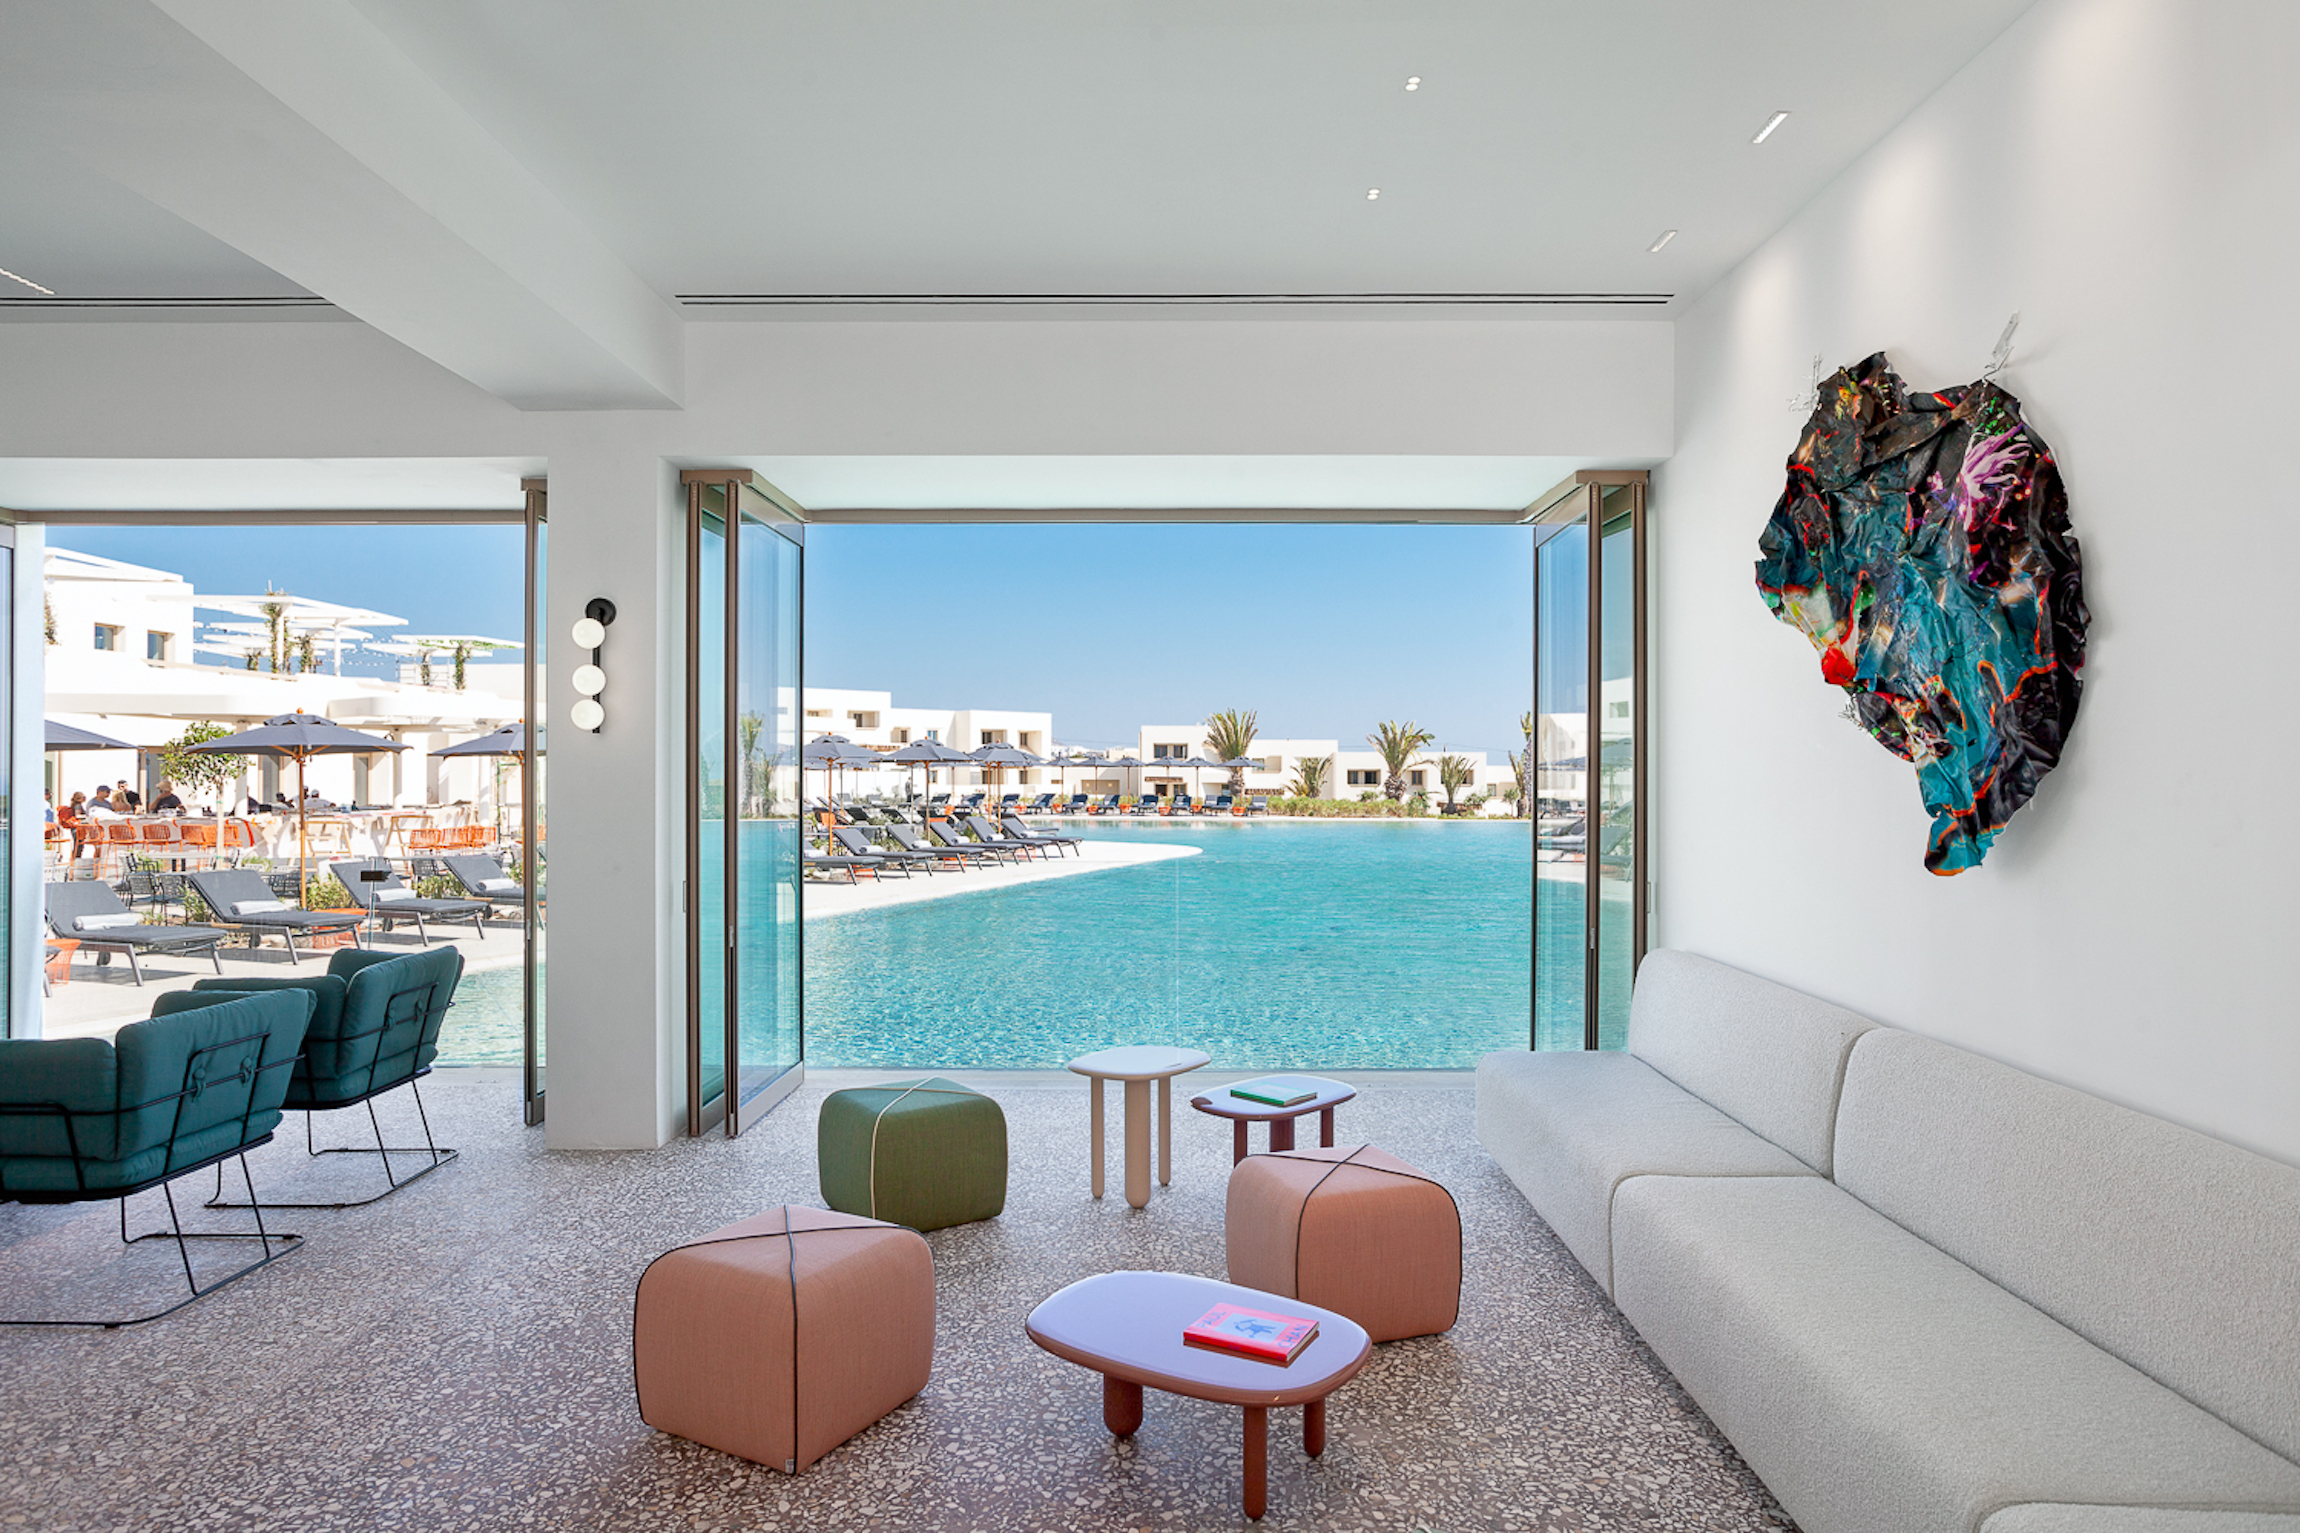 Escape The Santorini Crowds At This Design-Focused Hotel